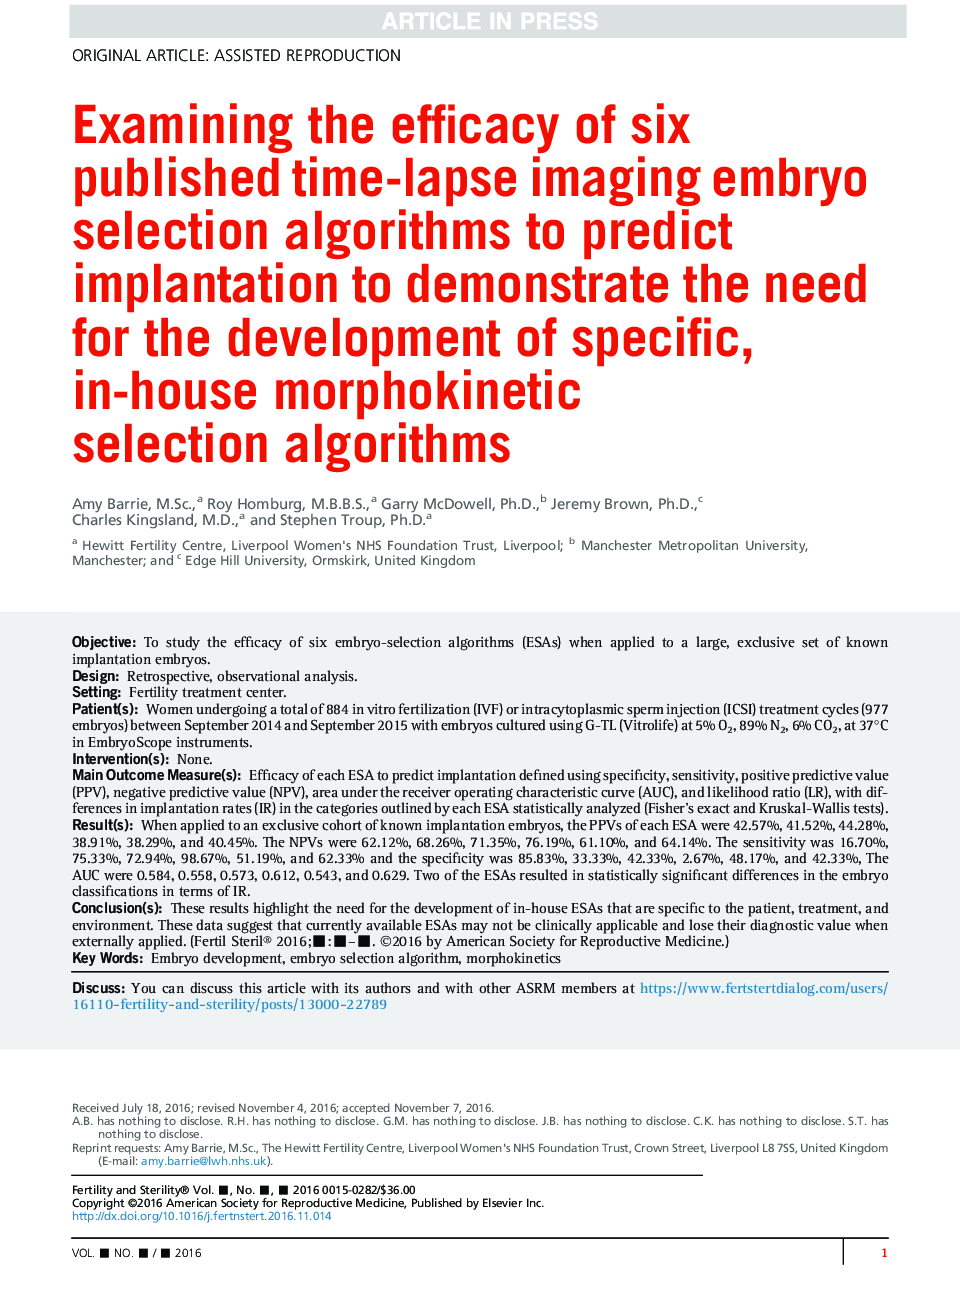 بررسی اثربخشی شش الگوریتم انتخاب ژنتیک تصویربرداری از زمان تخمینی برای پیش بینی لانه گزینی برای نشان دادن نیاز به توسعه الگوریتم های خاص مورفوکینتیک داخلی 